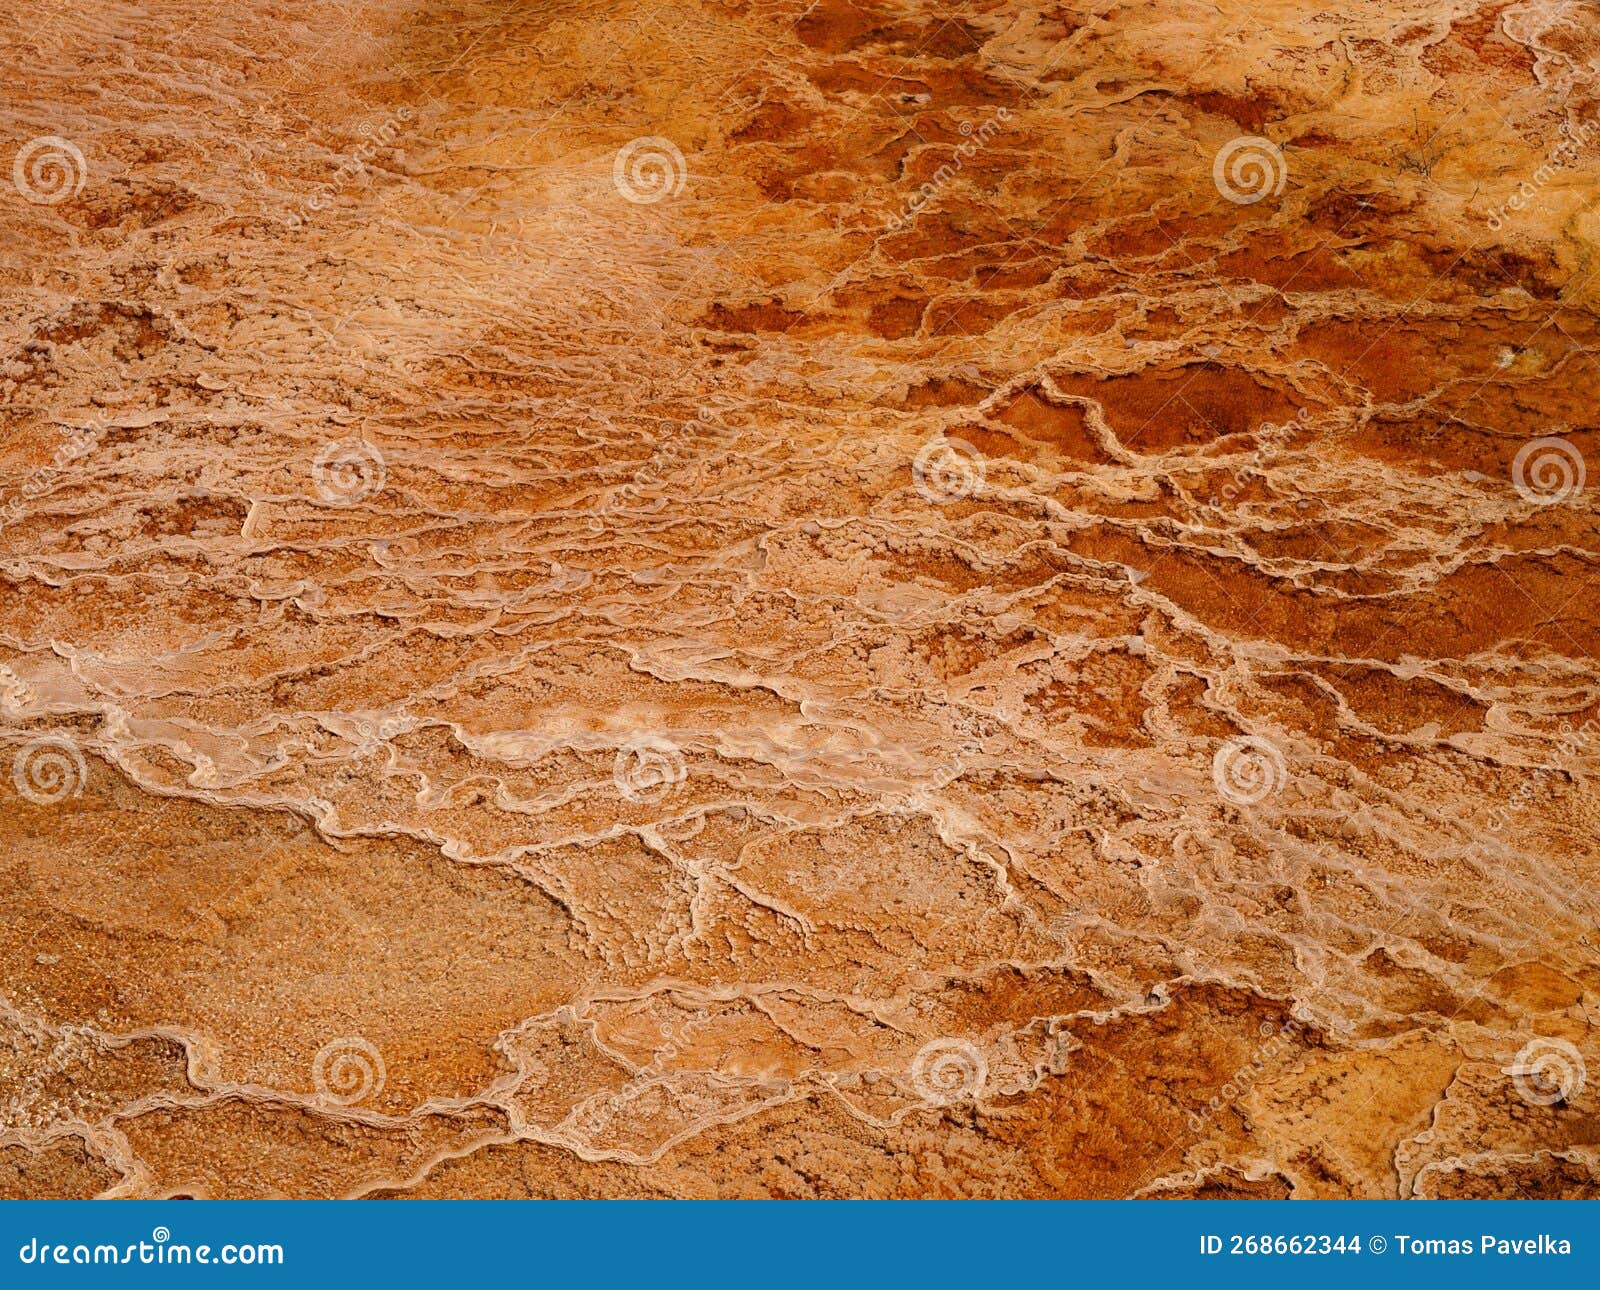 thermal sediments at yellowstone national park, usa